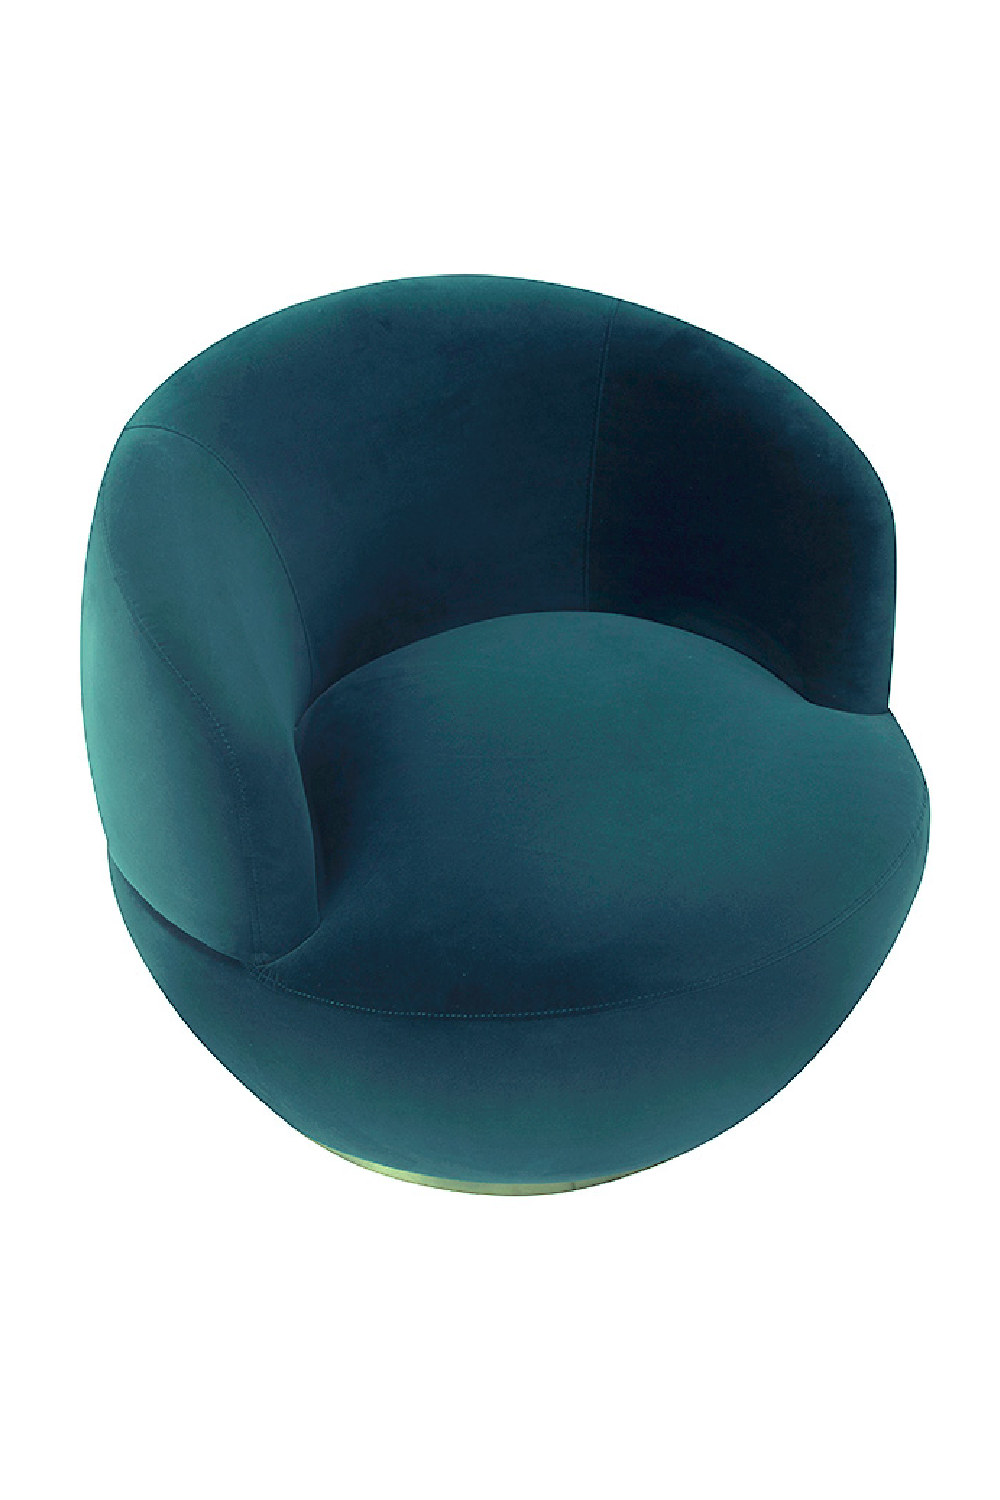 Circular Velvet Swivel Chair | Liang & Eimil Vitale | Oroa.com